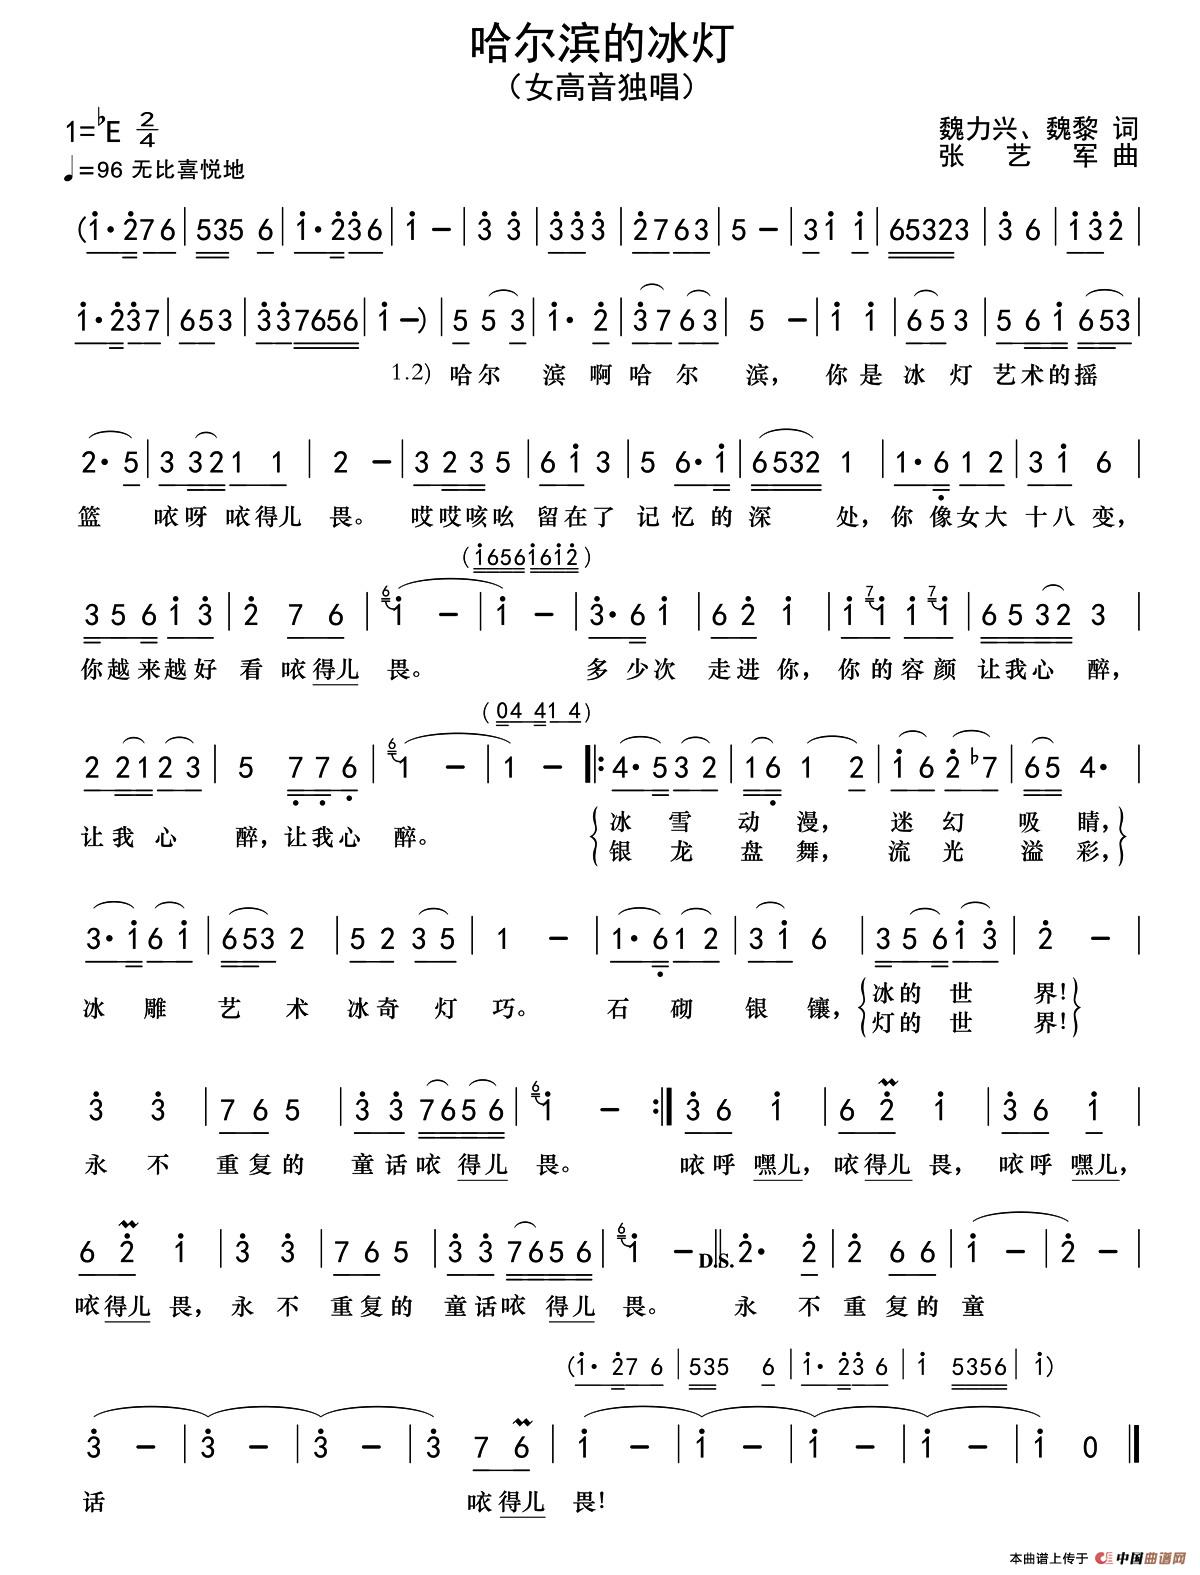 浪花里飞出欢乐的歌-哈尔滨的夏天主题曲五线谱预览1-钢琴谱文件（五线谱、双手简谱、数字谱、Midi、PDF）免费下载